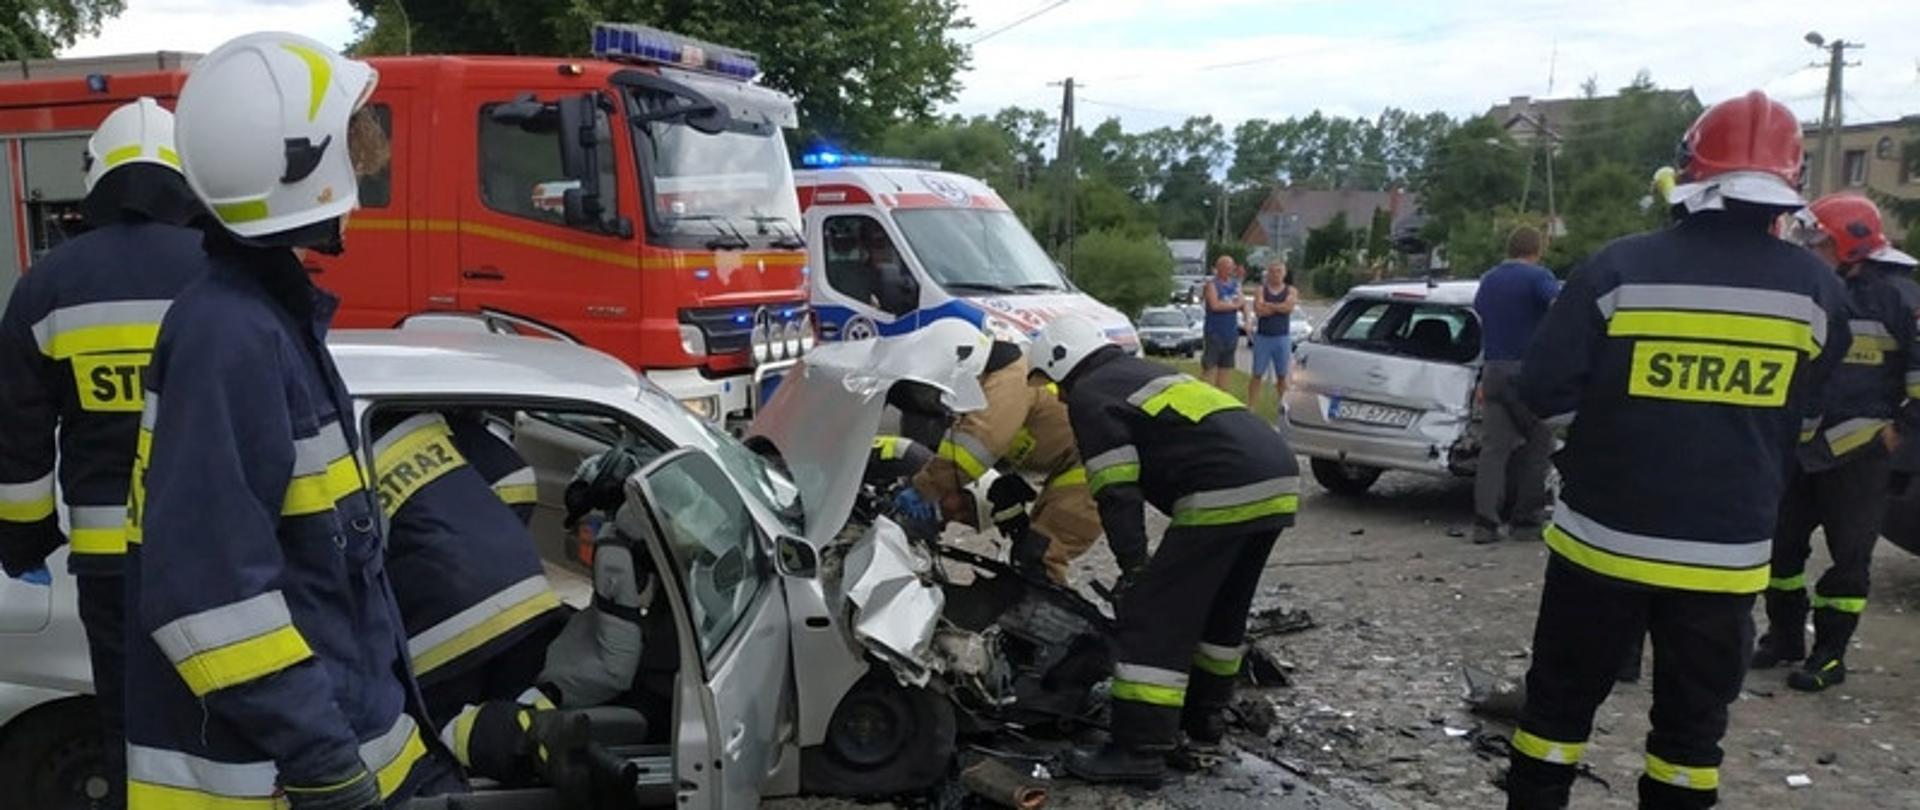 Zdjęcie przedstawia służby ratownicze w trakcie prowadzonych działań ratowniczych. Na zdjęciu samochód po kolizji, strażacy, zniszczony pojazd.